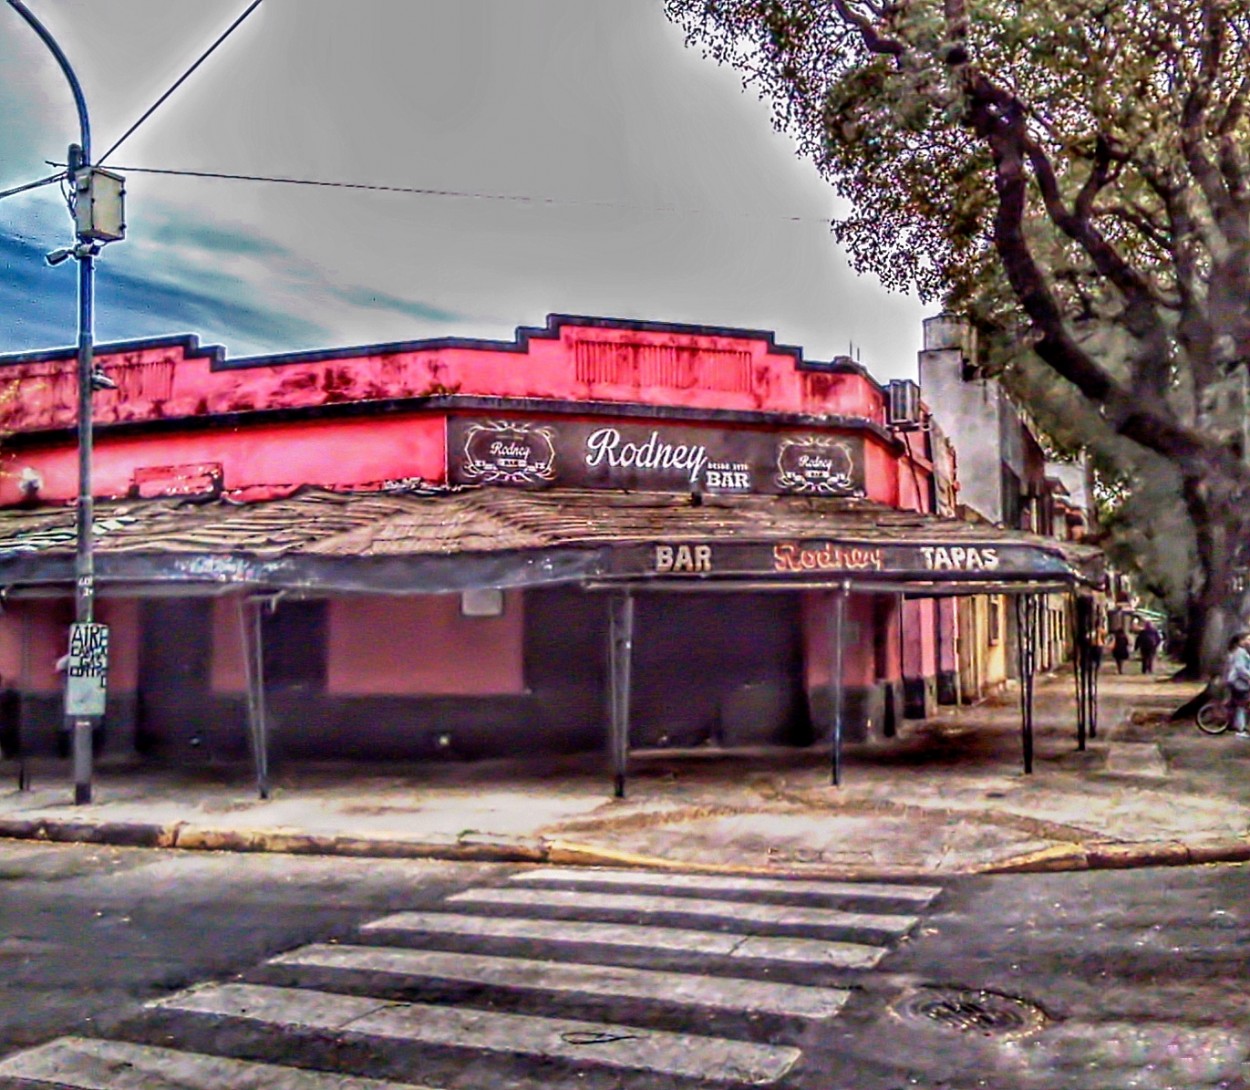 "El bar de la calle Rodney" de Carlos Gustavo Ayliffe